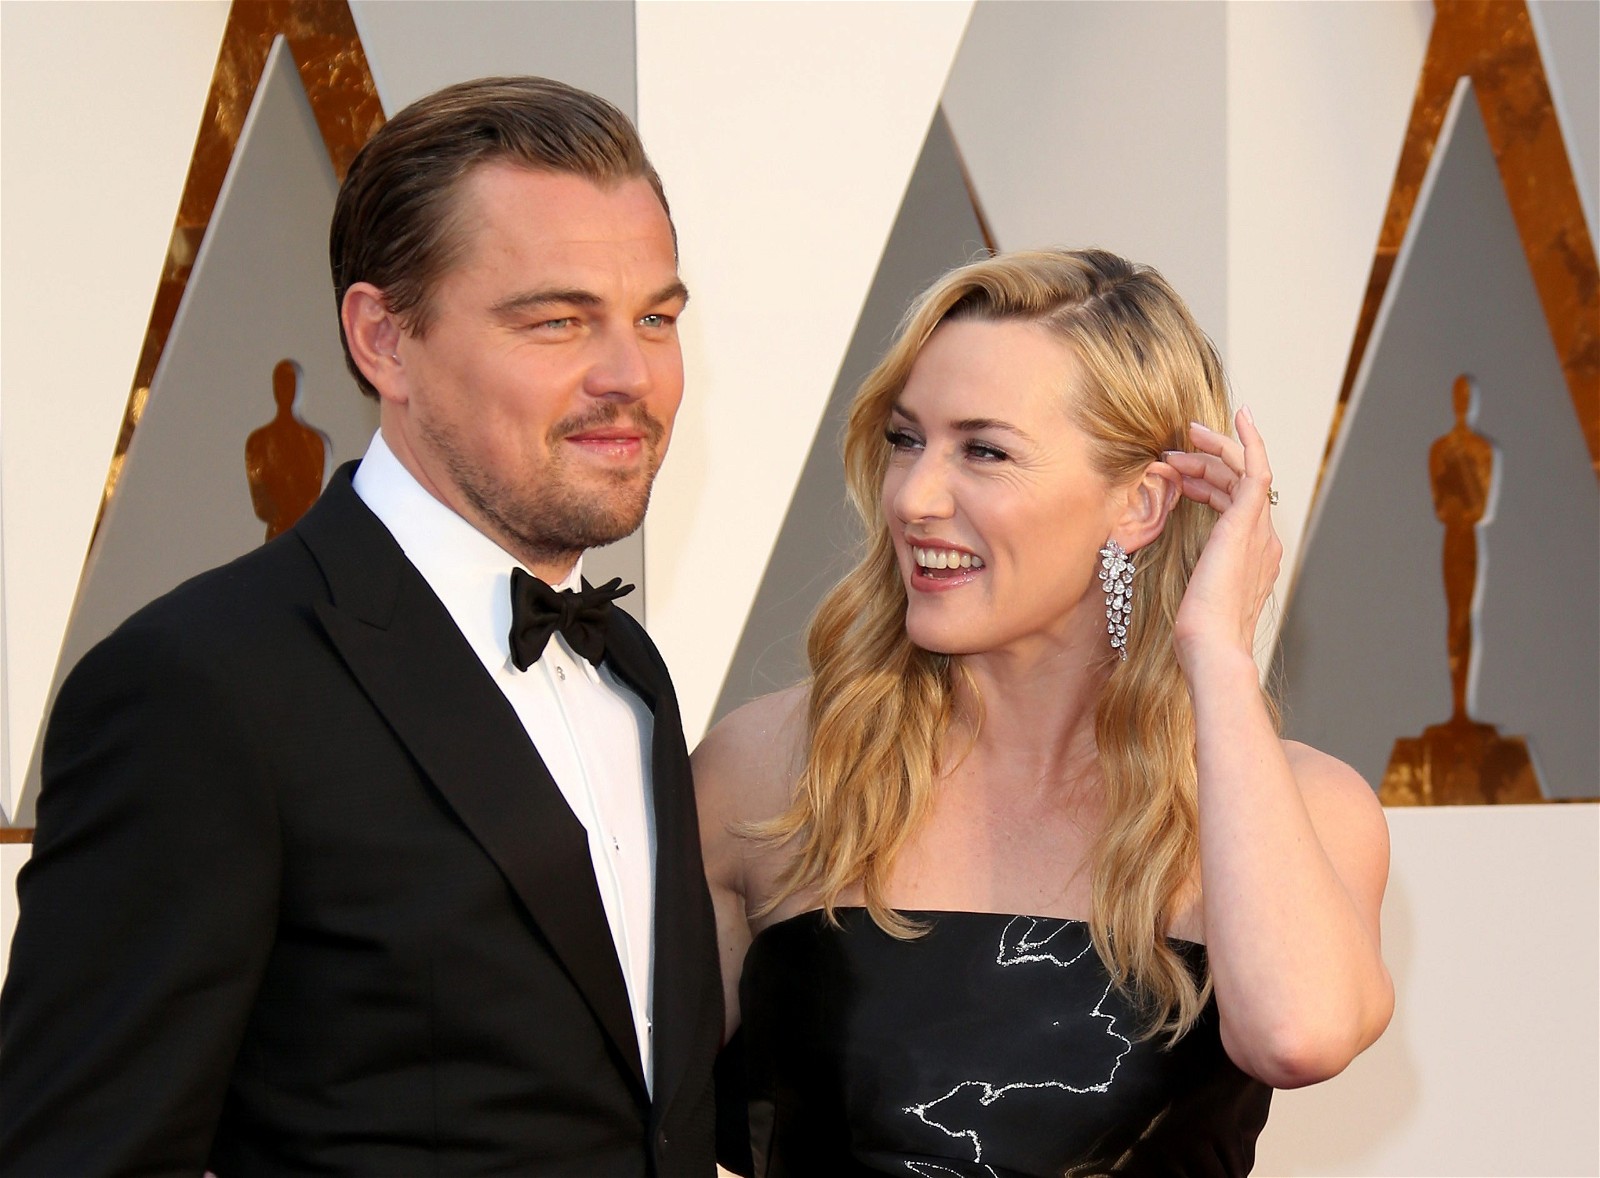 Leonardo DiCaprio and Kate Winslet starred in Titanic